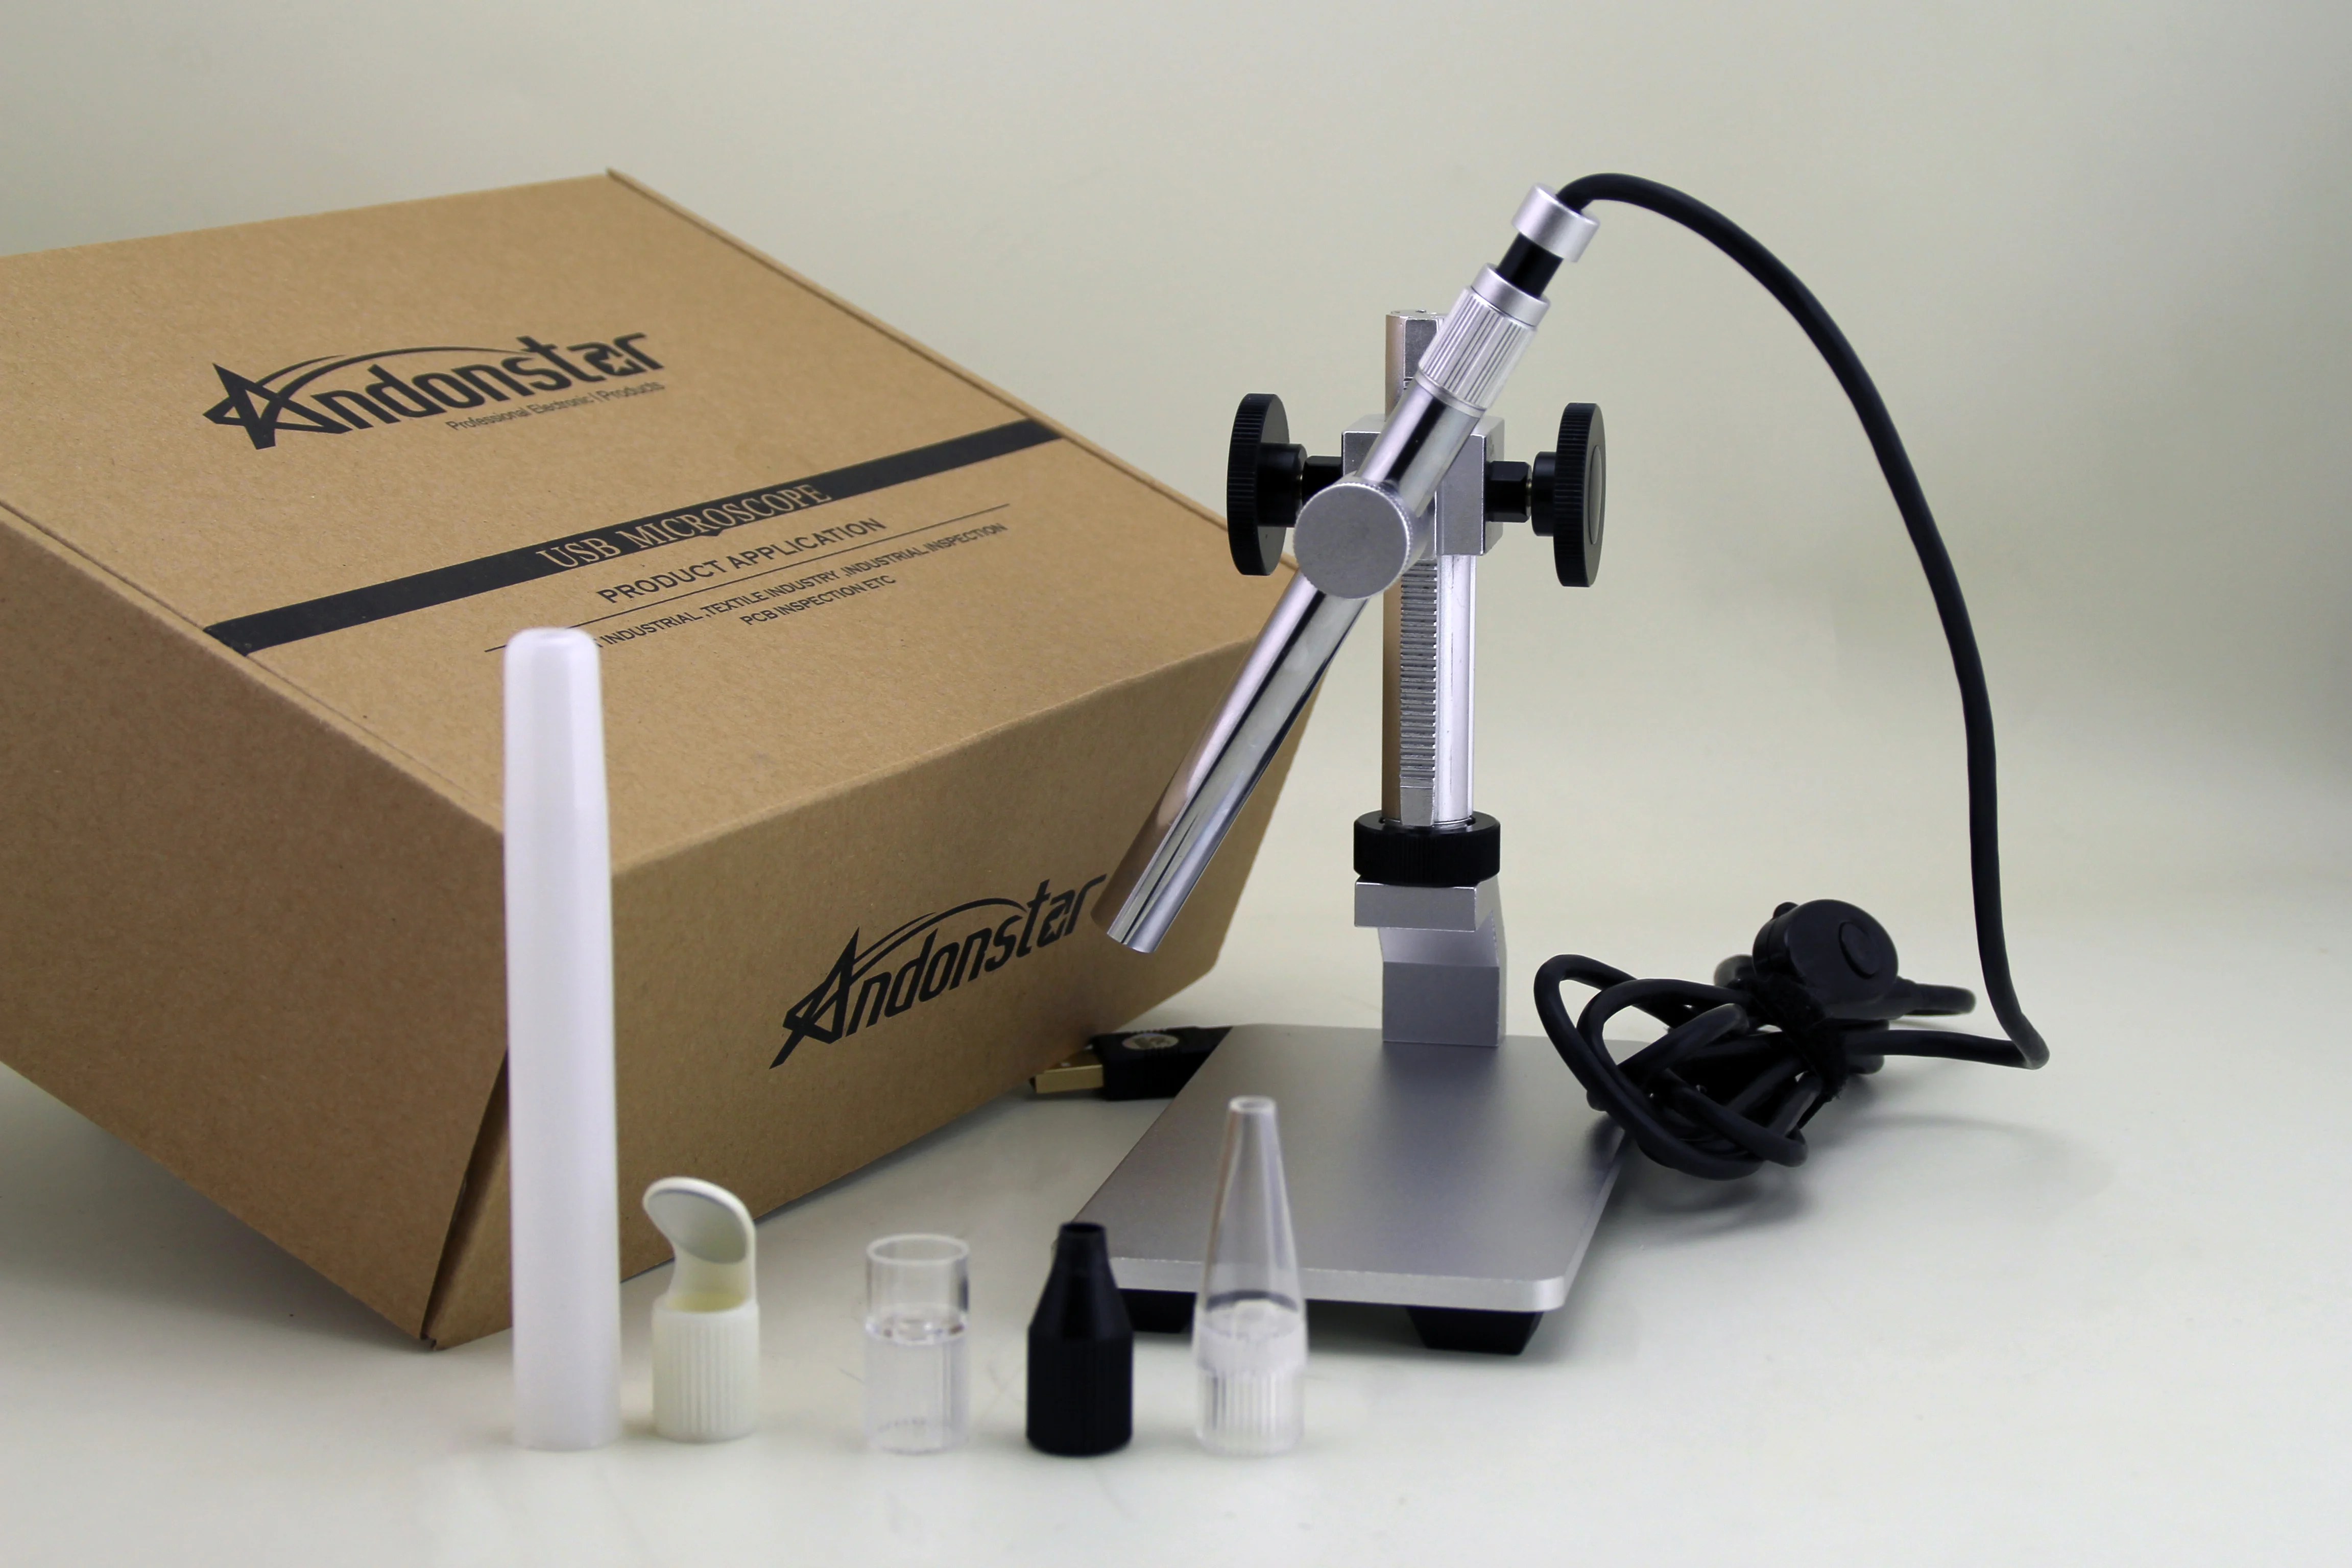 Andonstar 500X USB цифровой микроскоп V160 эндоскоп 2 мегапиксельная Лупа камера ручной с